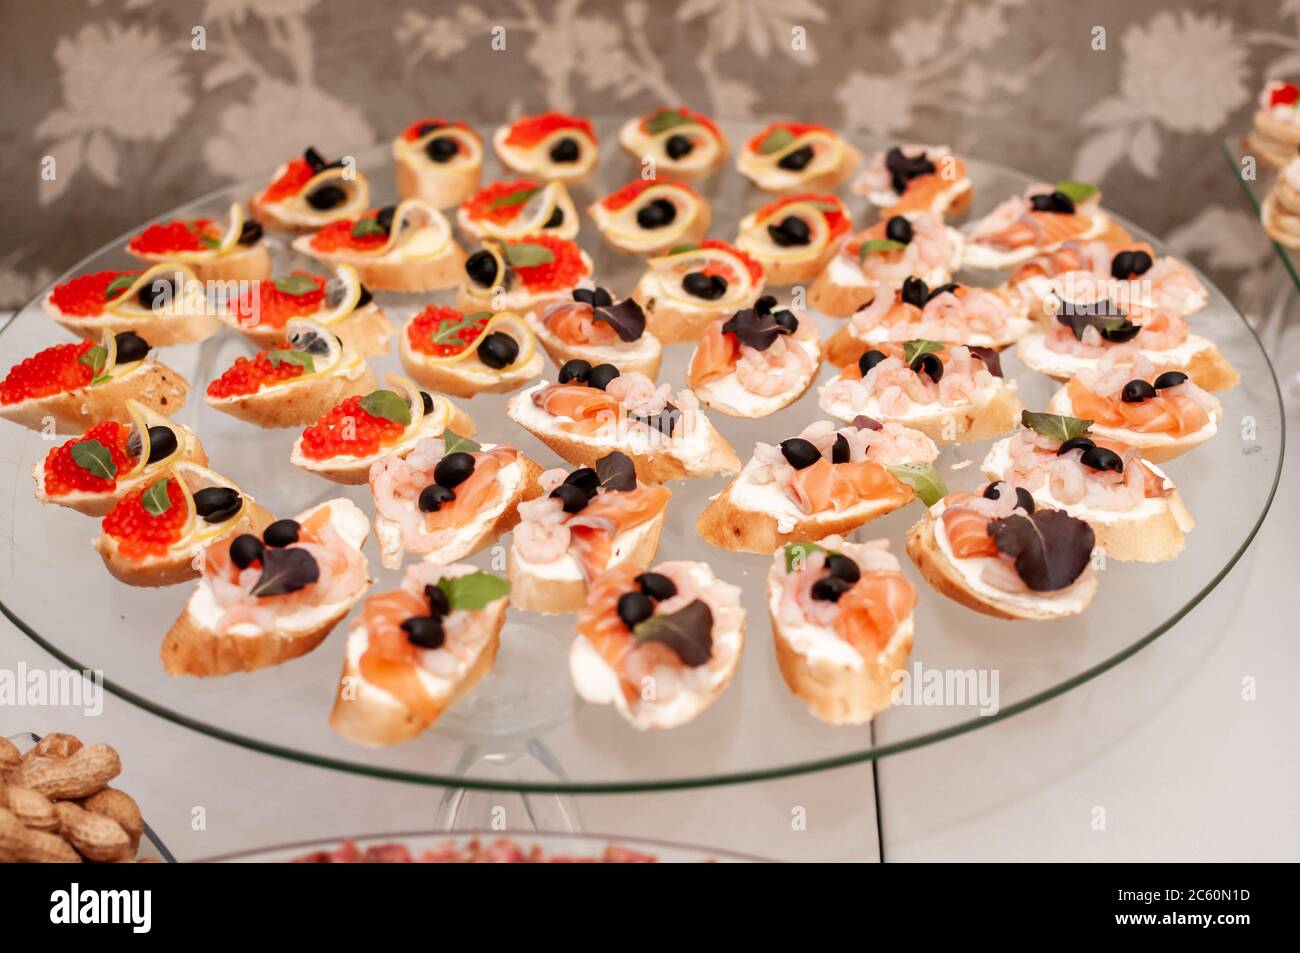 canapes con salmone, gamberi e olive e canapes con caviale rosso Foto Stock